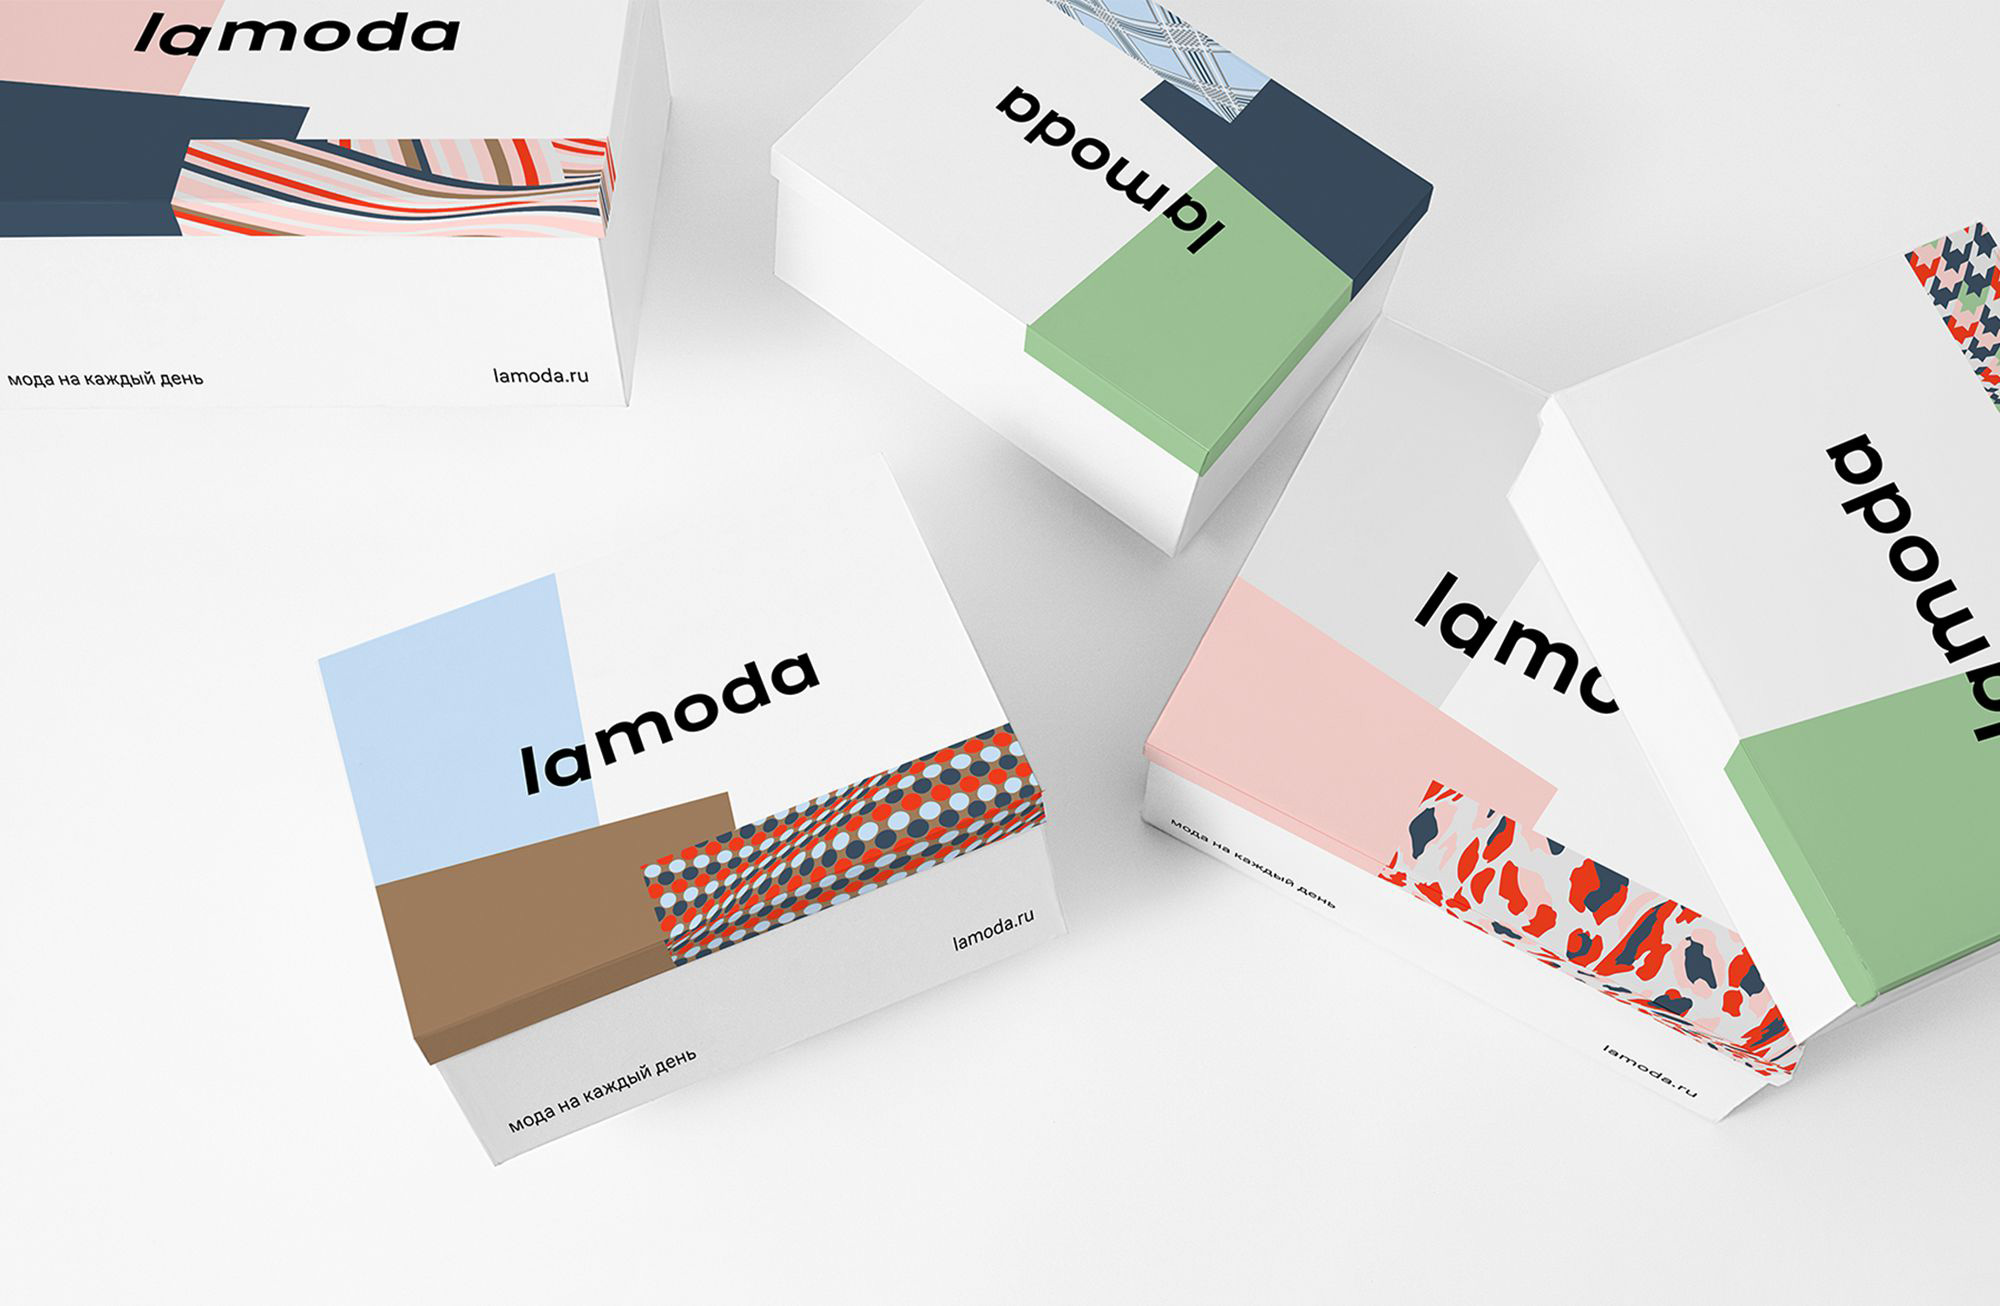 New Logo and Identity for lamoda by Shuka